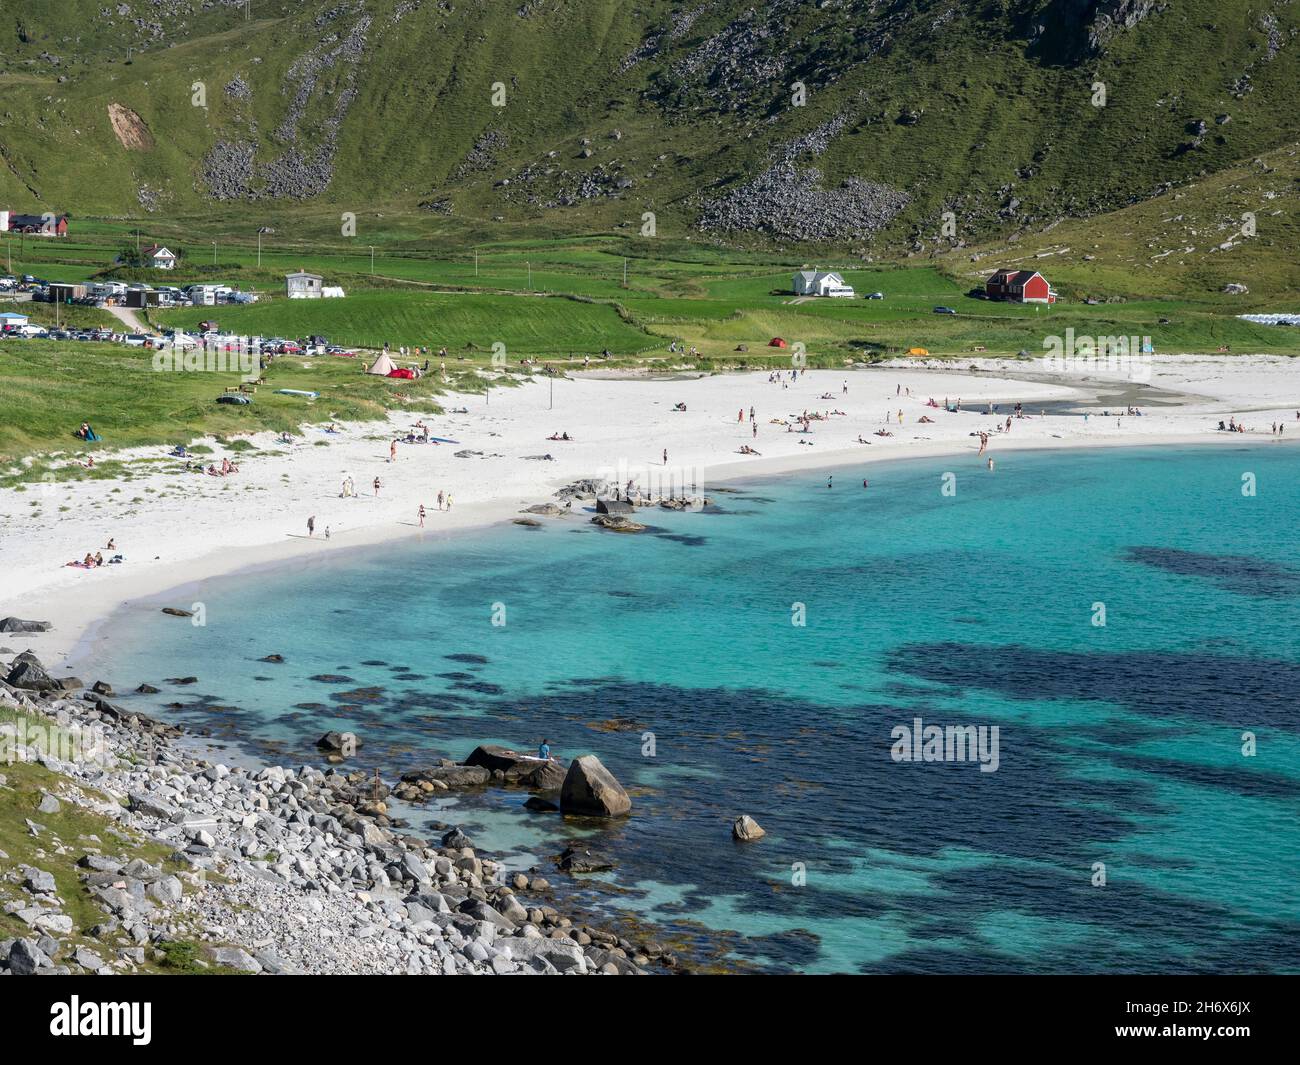 Hauklandstranda, plage de Haukland, plage de sable, île de Vestvagöy, Lofoten,Norvège Banque D'Images